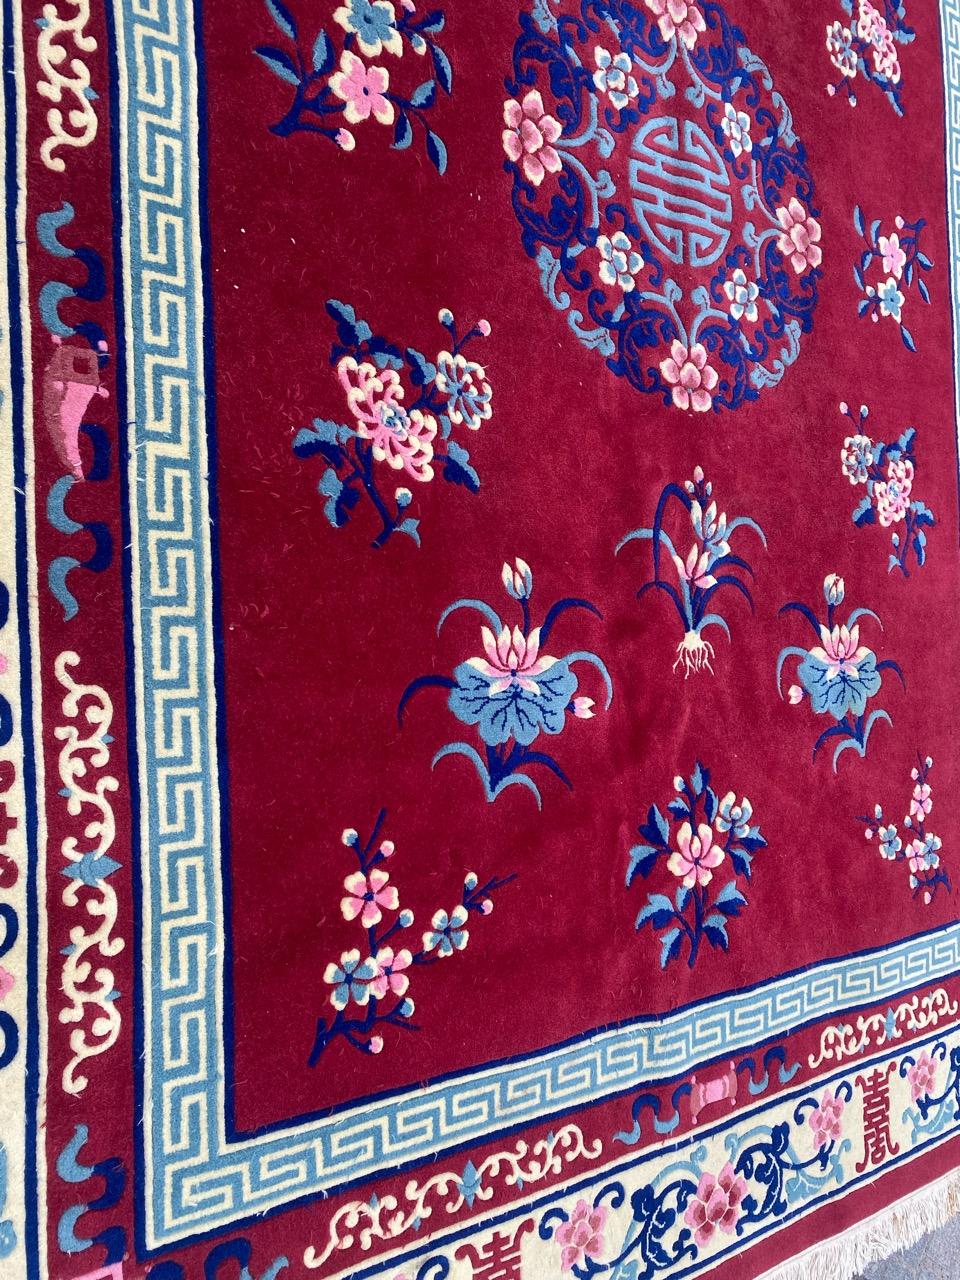 Joli tapis chinois vintage avec un beau design chinois et un champ de couleur rouge, entièrement noué à la main avec du velours de laine sur une base de coton.

✨✨✨
